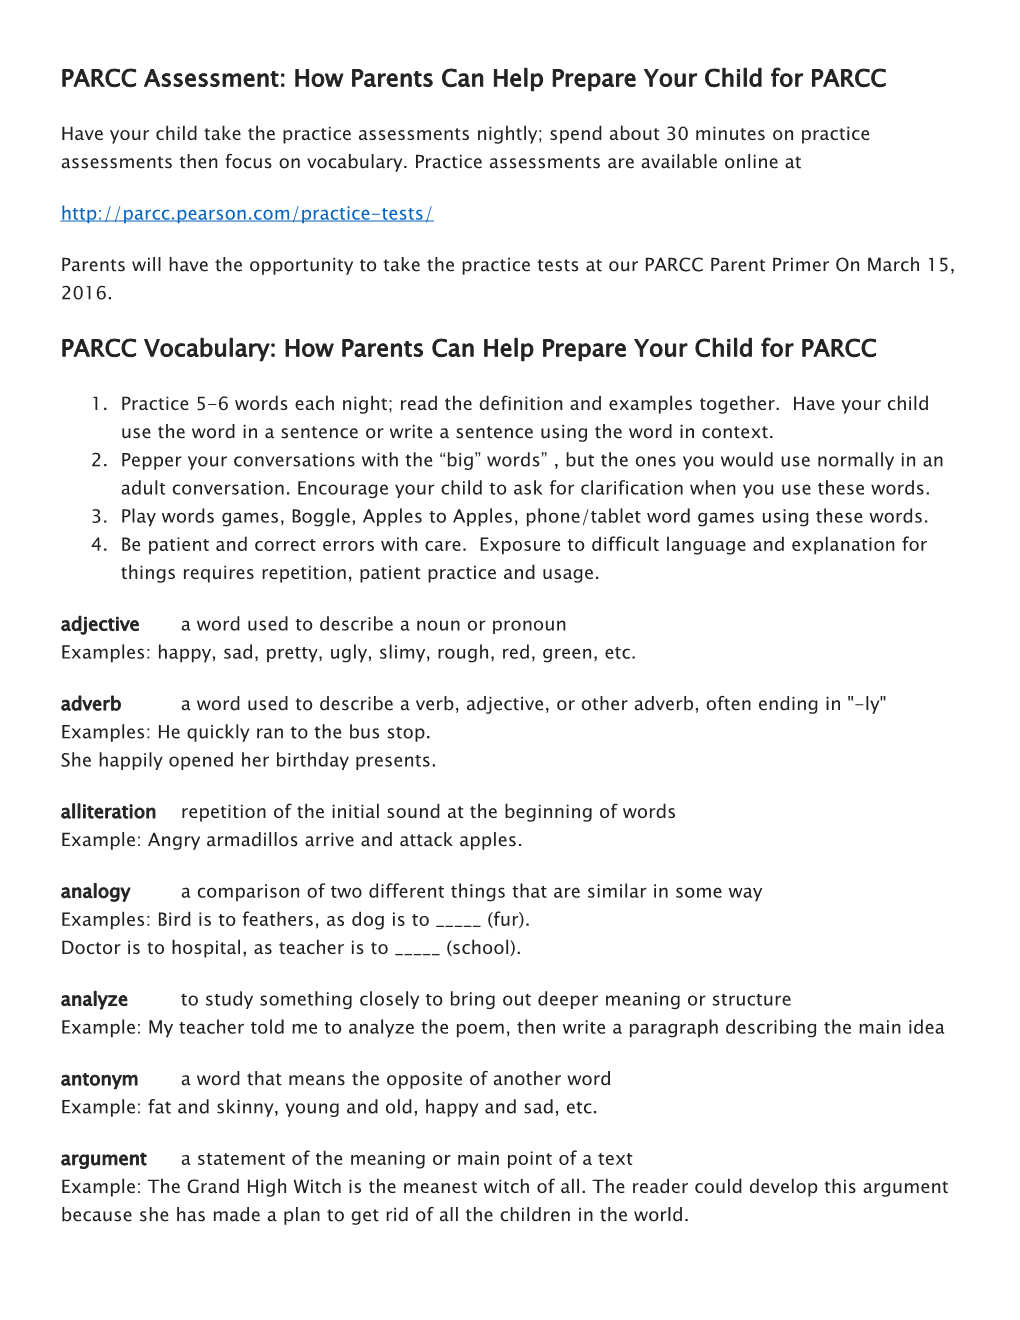 PARCC Assessment: How Parents Can Help Prepare Your Child for PARCC